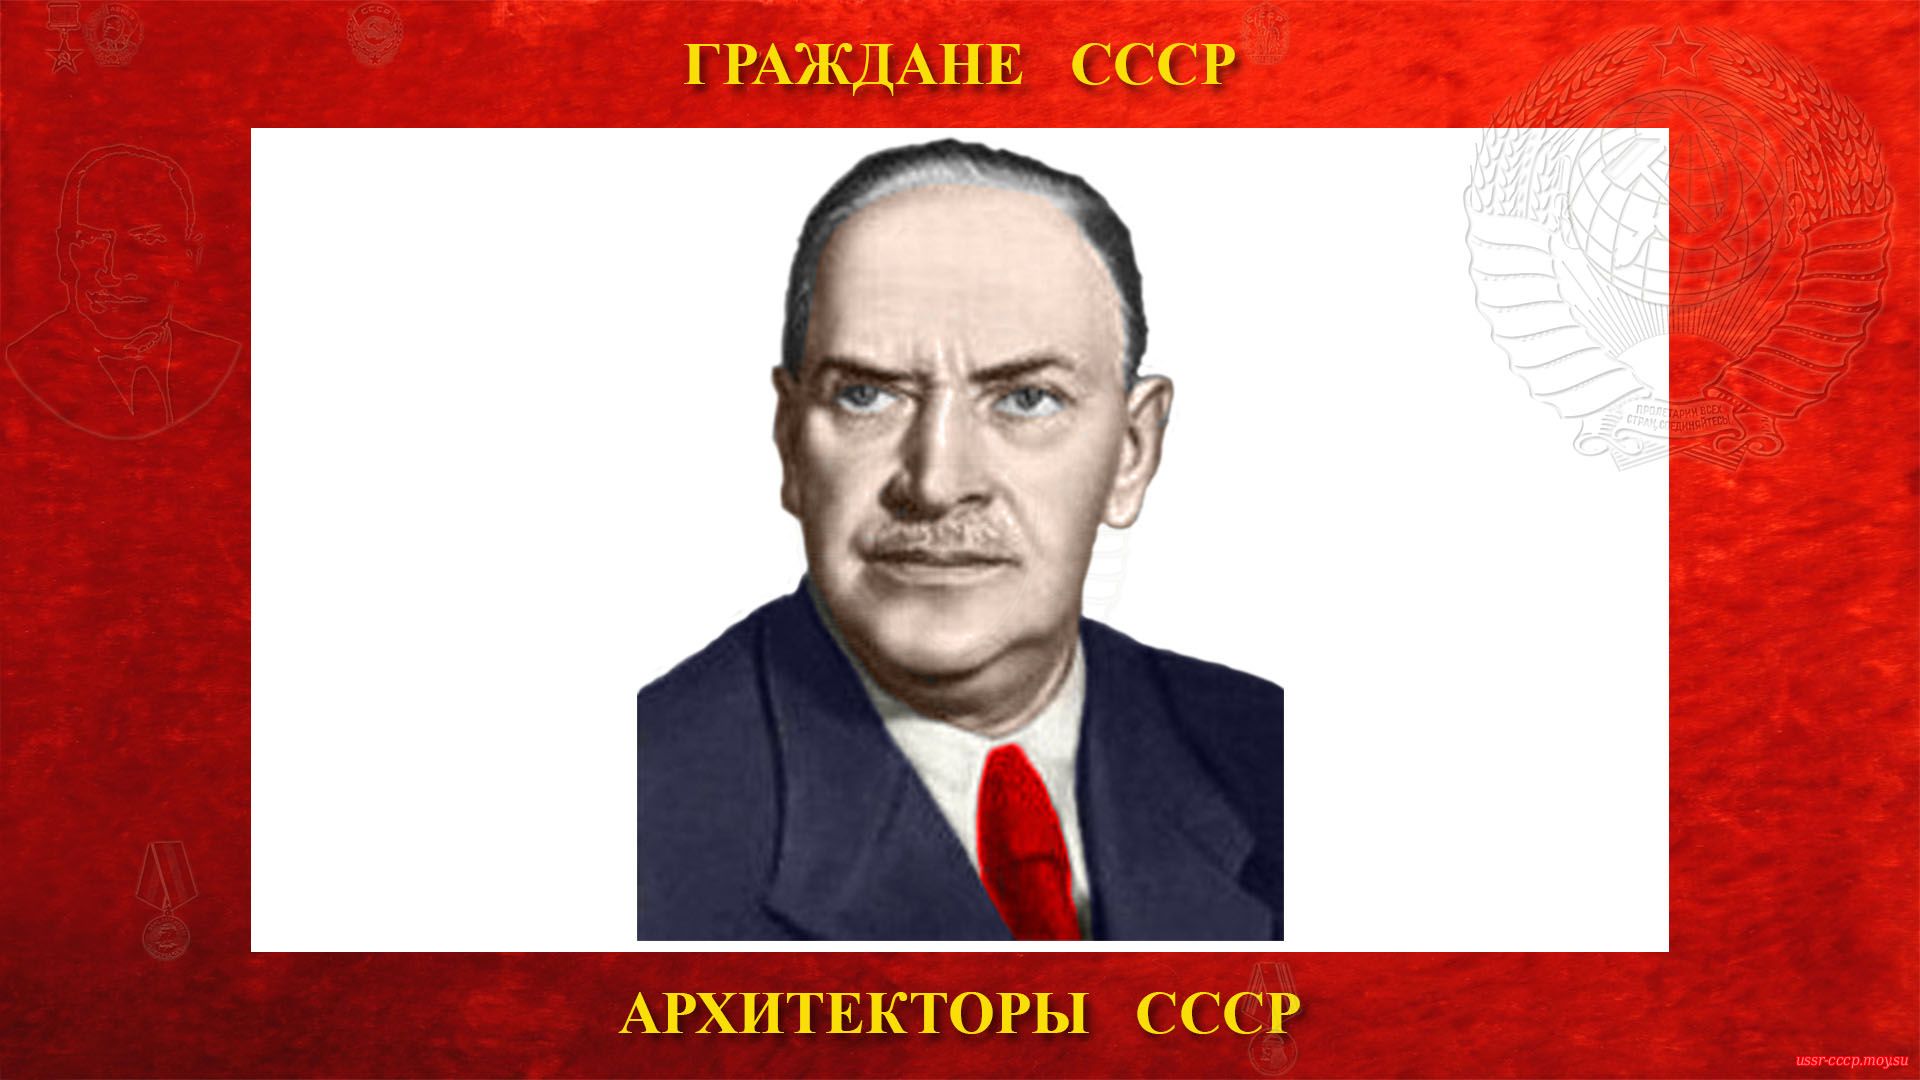 Гельфрейх Владимир Георгиевич (биография)